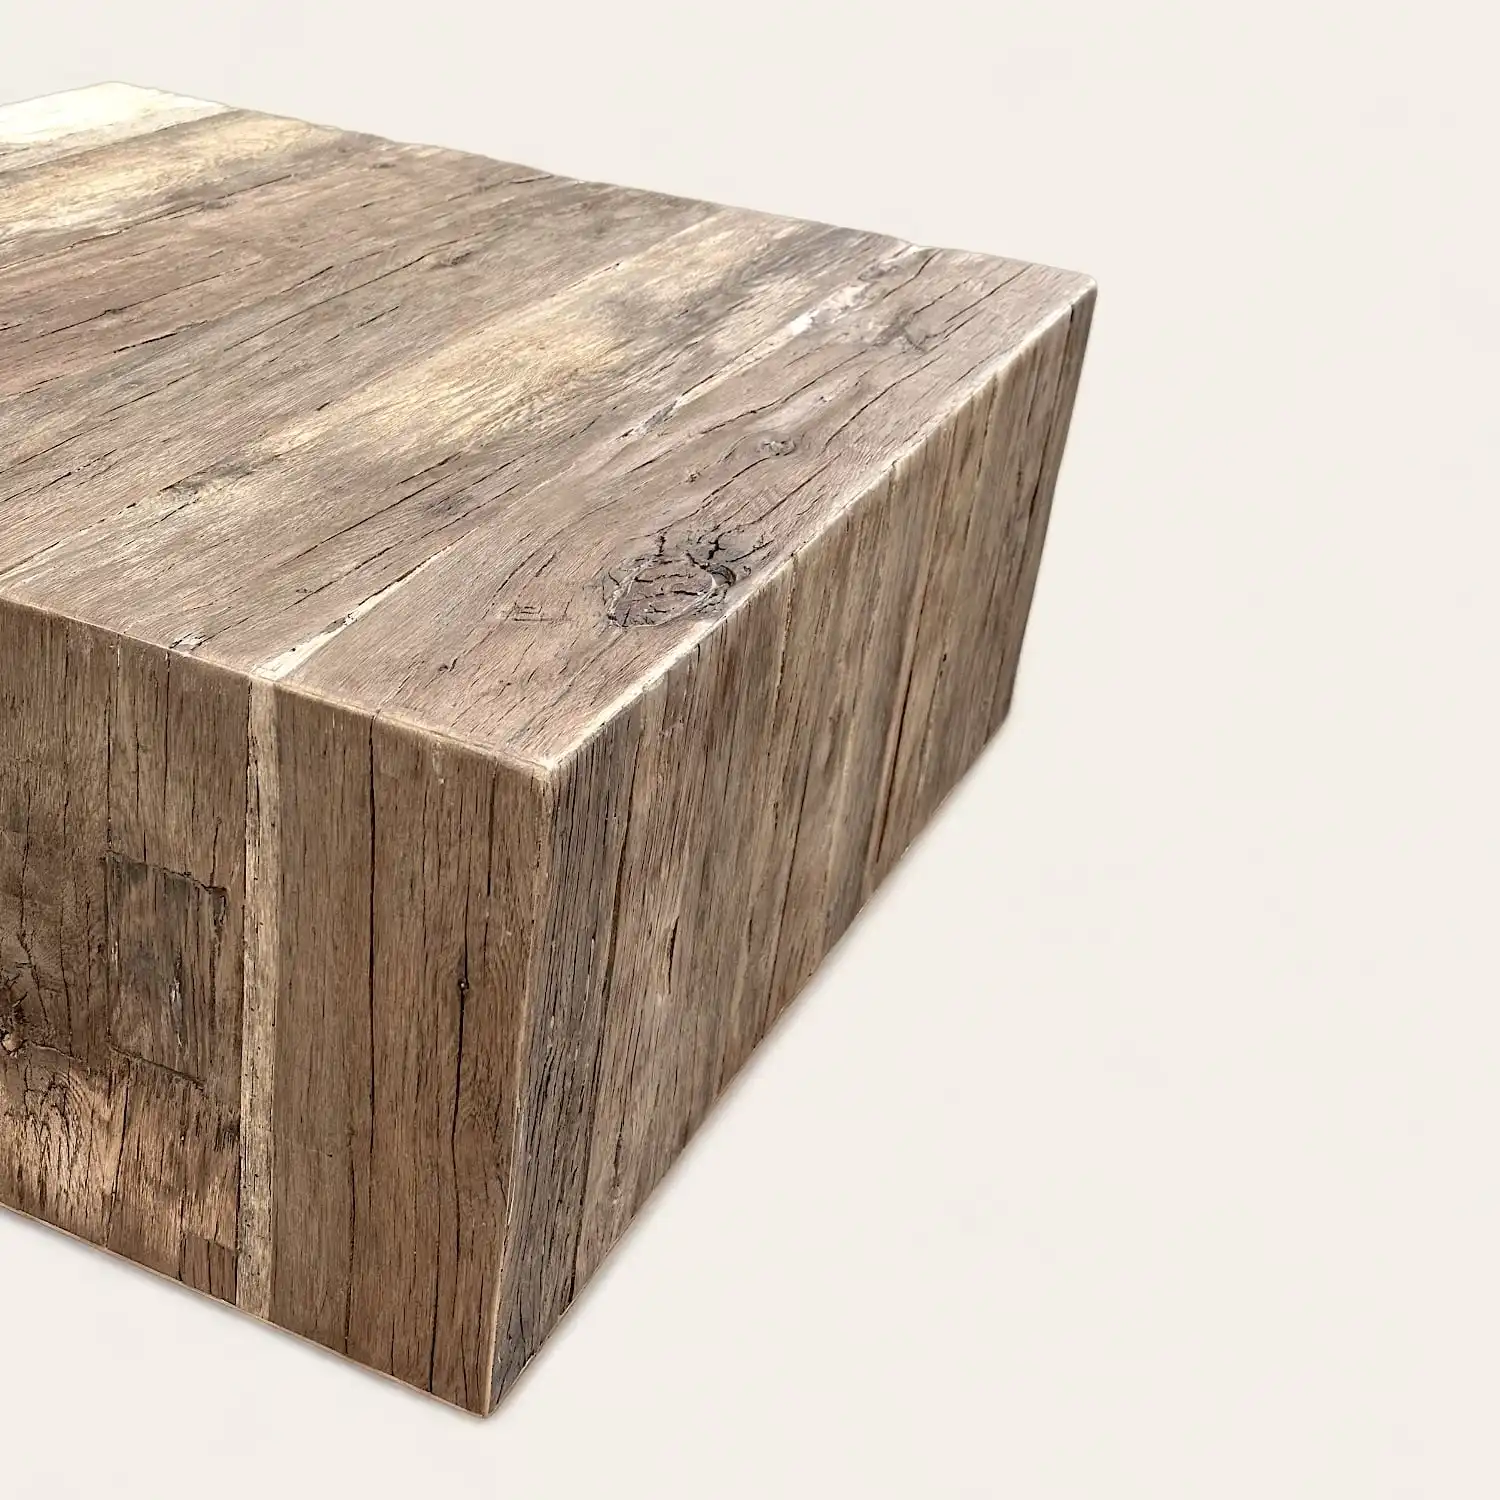  Table basse cube en bois rustique sur fond blanc. 